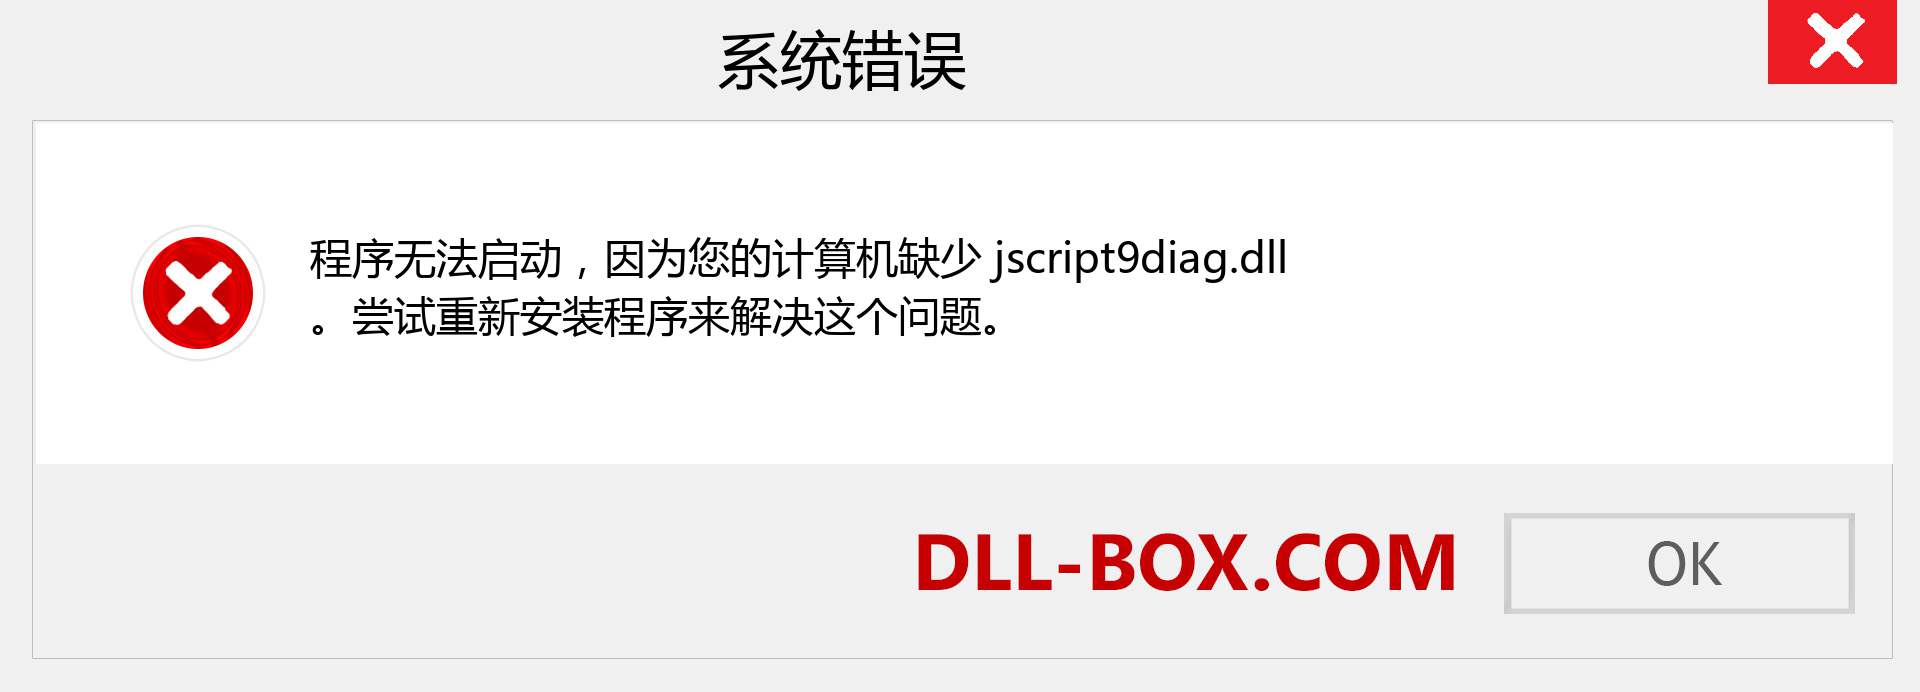 jscript9diag.dll 文件丢失？。 适用于 Windows 7、8、10 的下载 - 修复 Windows、照片、图像上的 jscript9diag dll 丢失错误